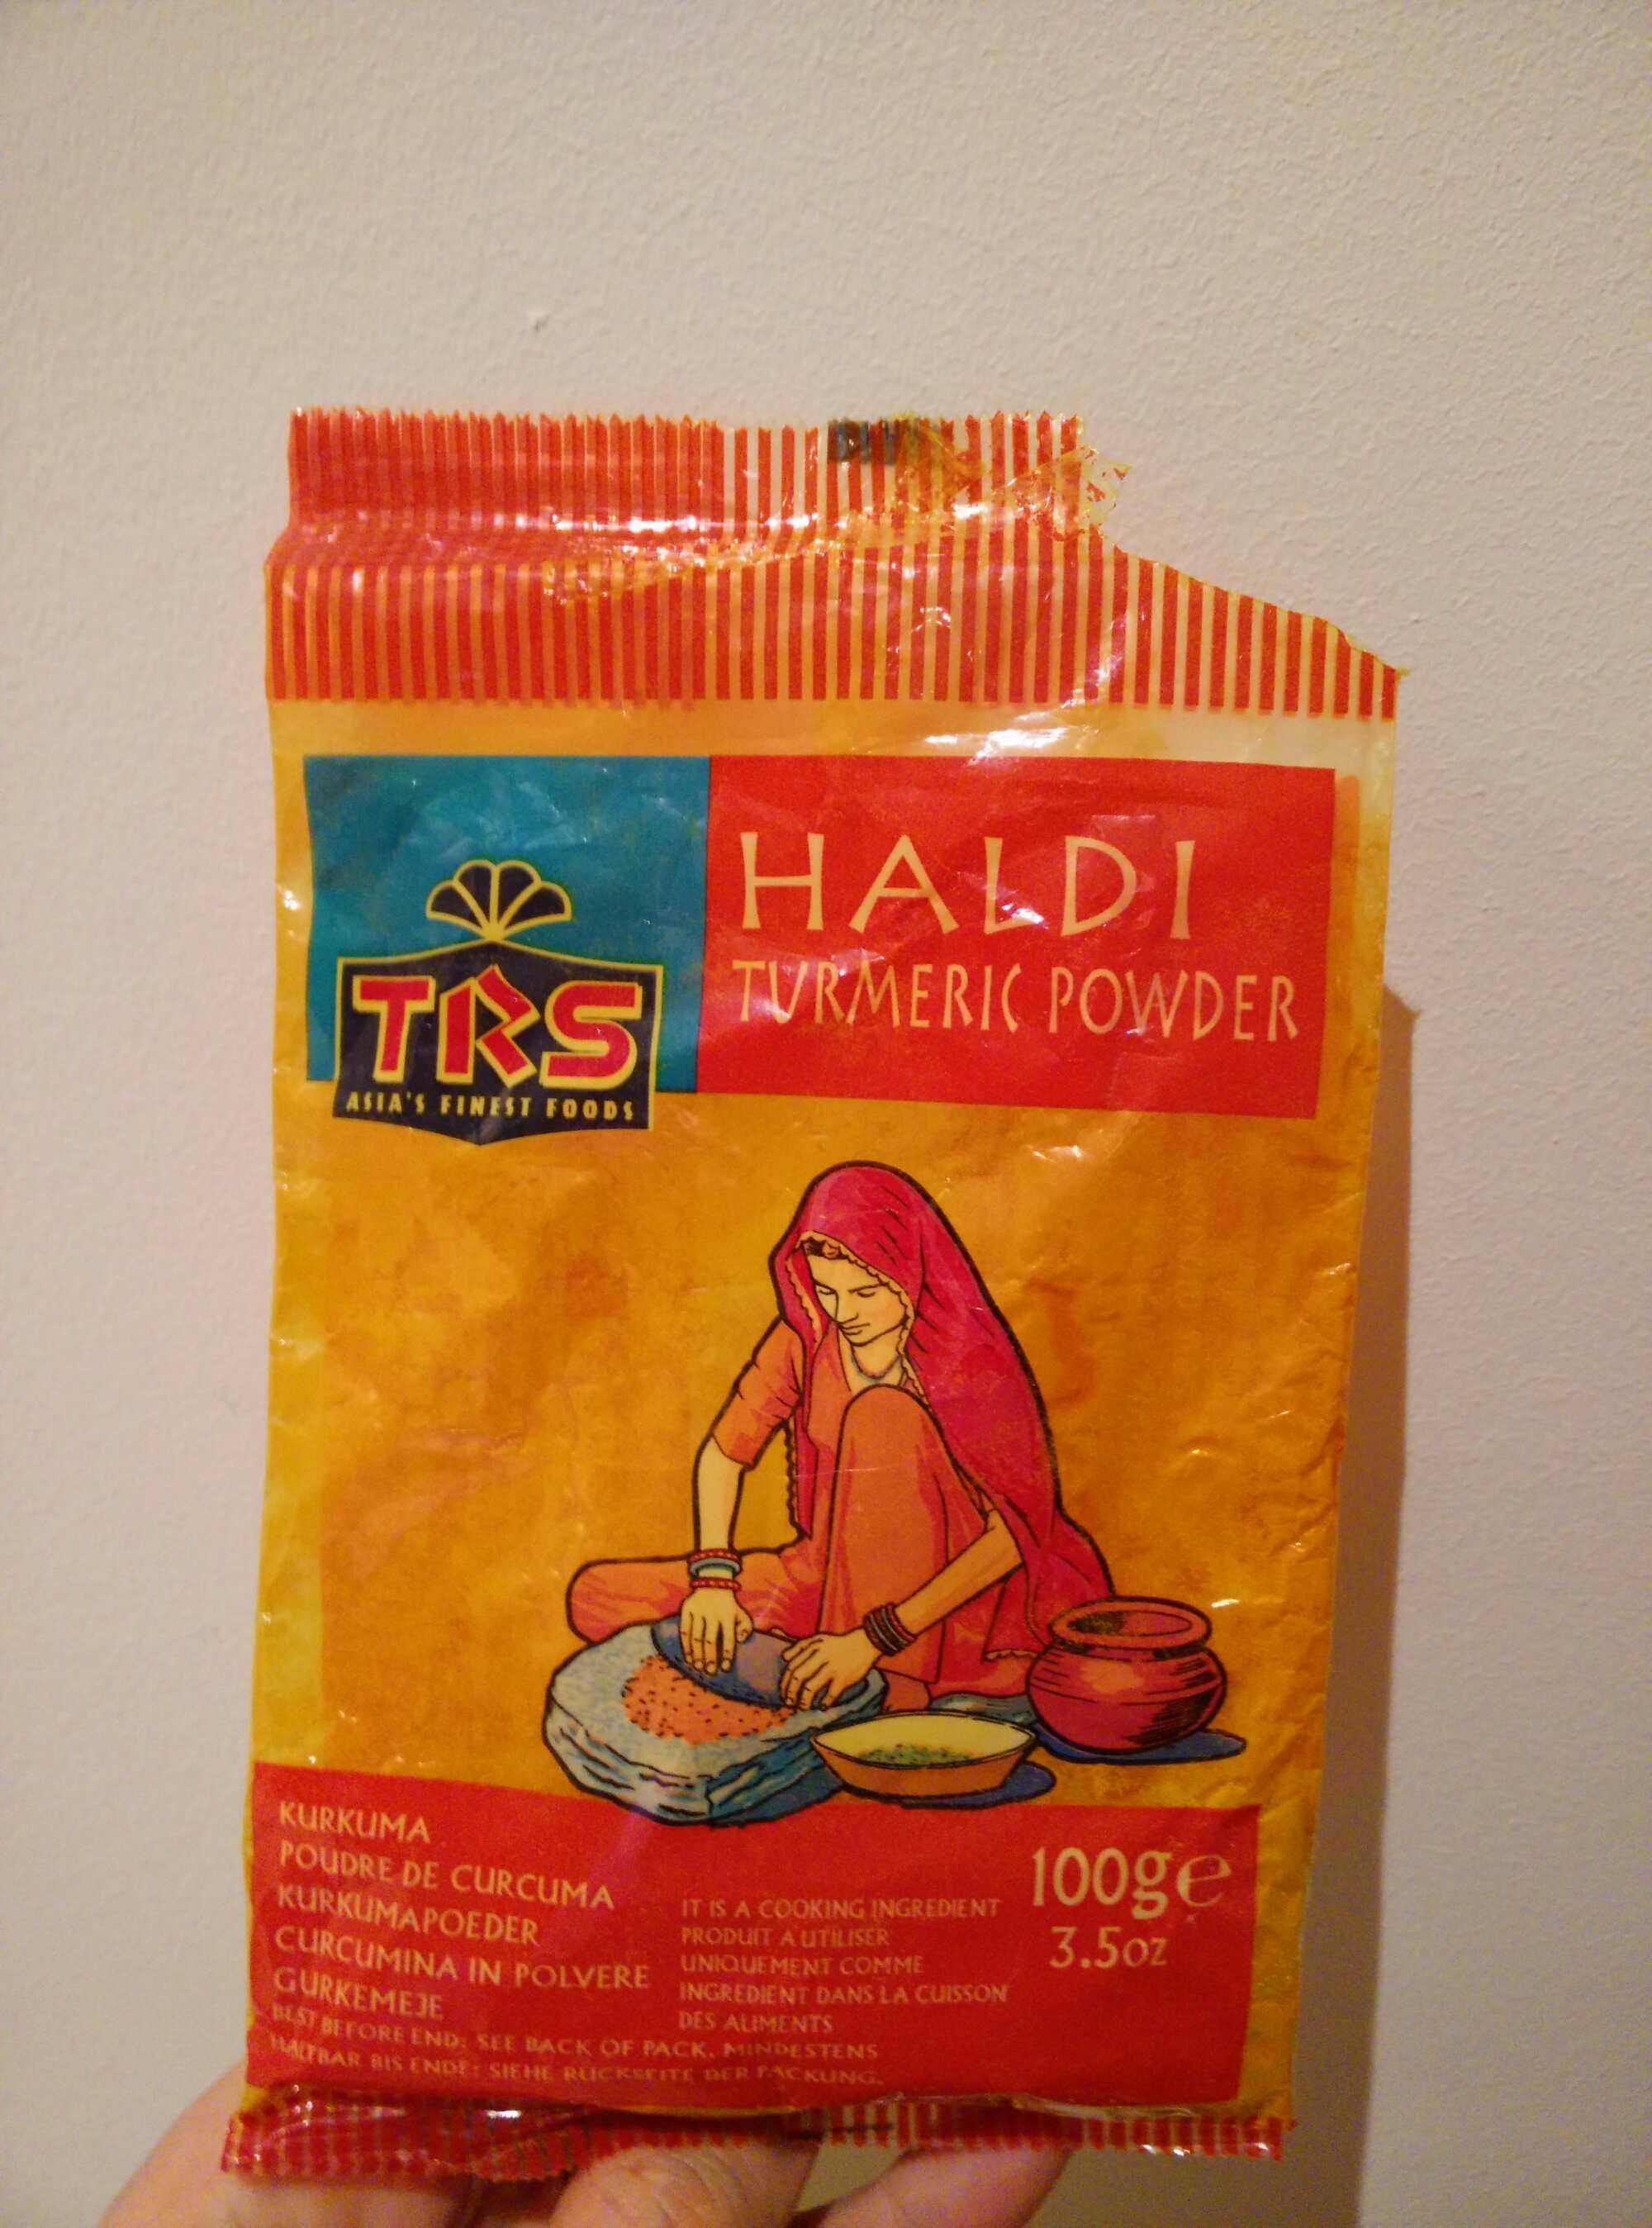 TRS Turmeric Powder Haldi poudre de curcuma - Product